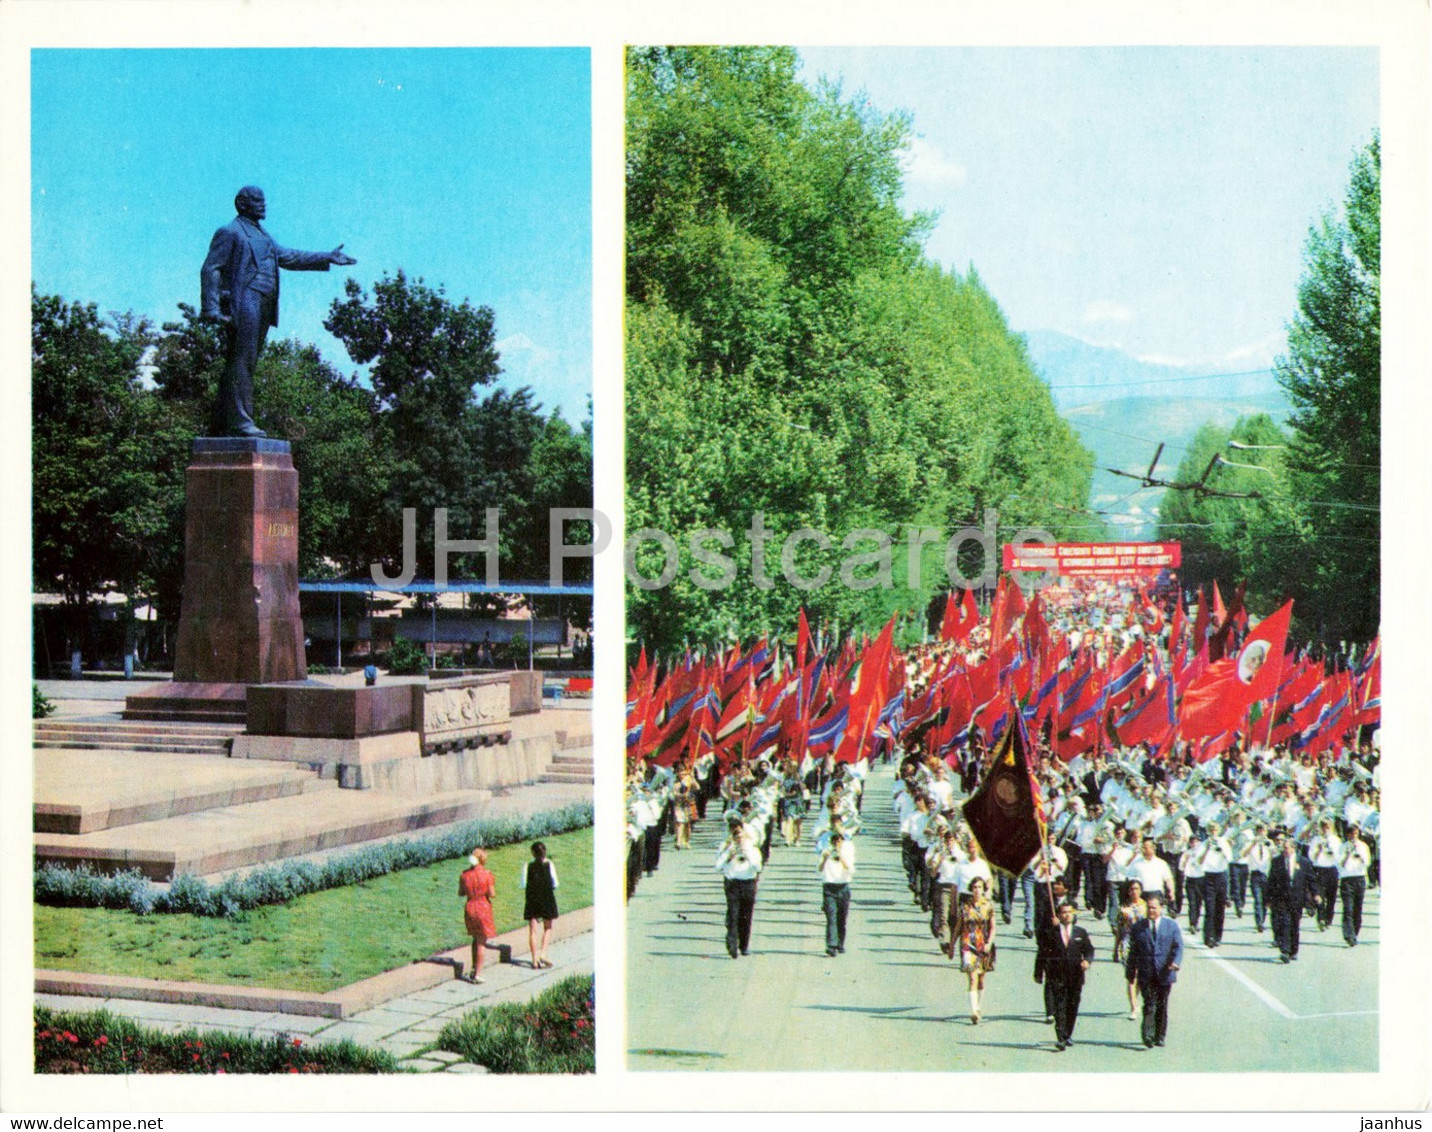 Dushanbe - Monument To Lenin - The City Celebrates - 1974 - Tajikistan USSR - Unused - Tadzjikistan